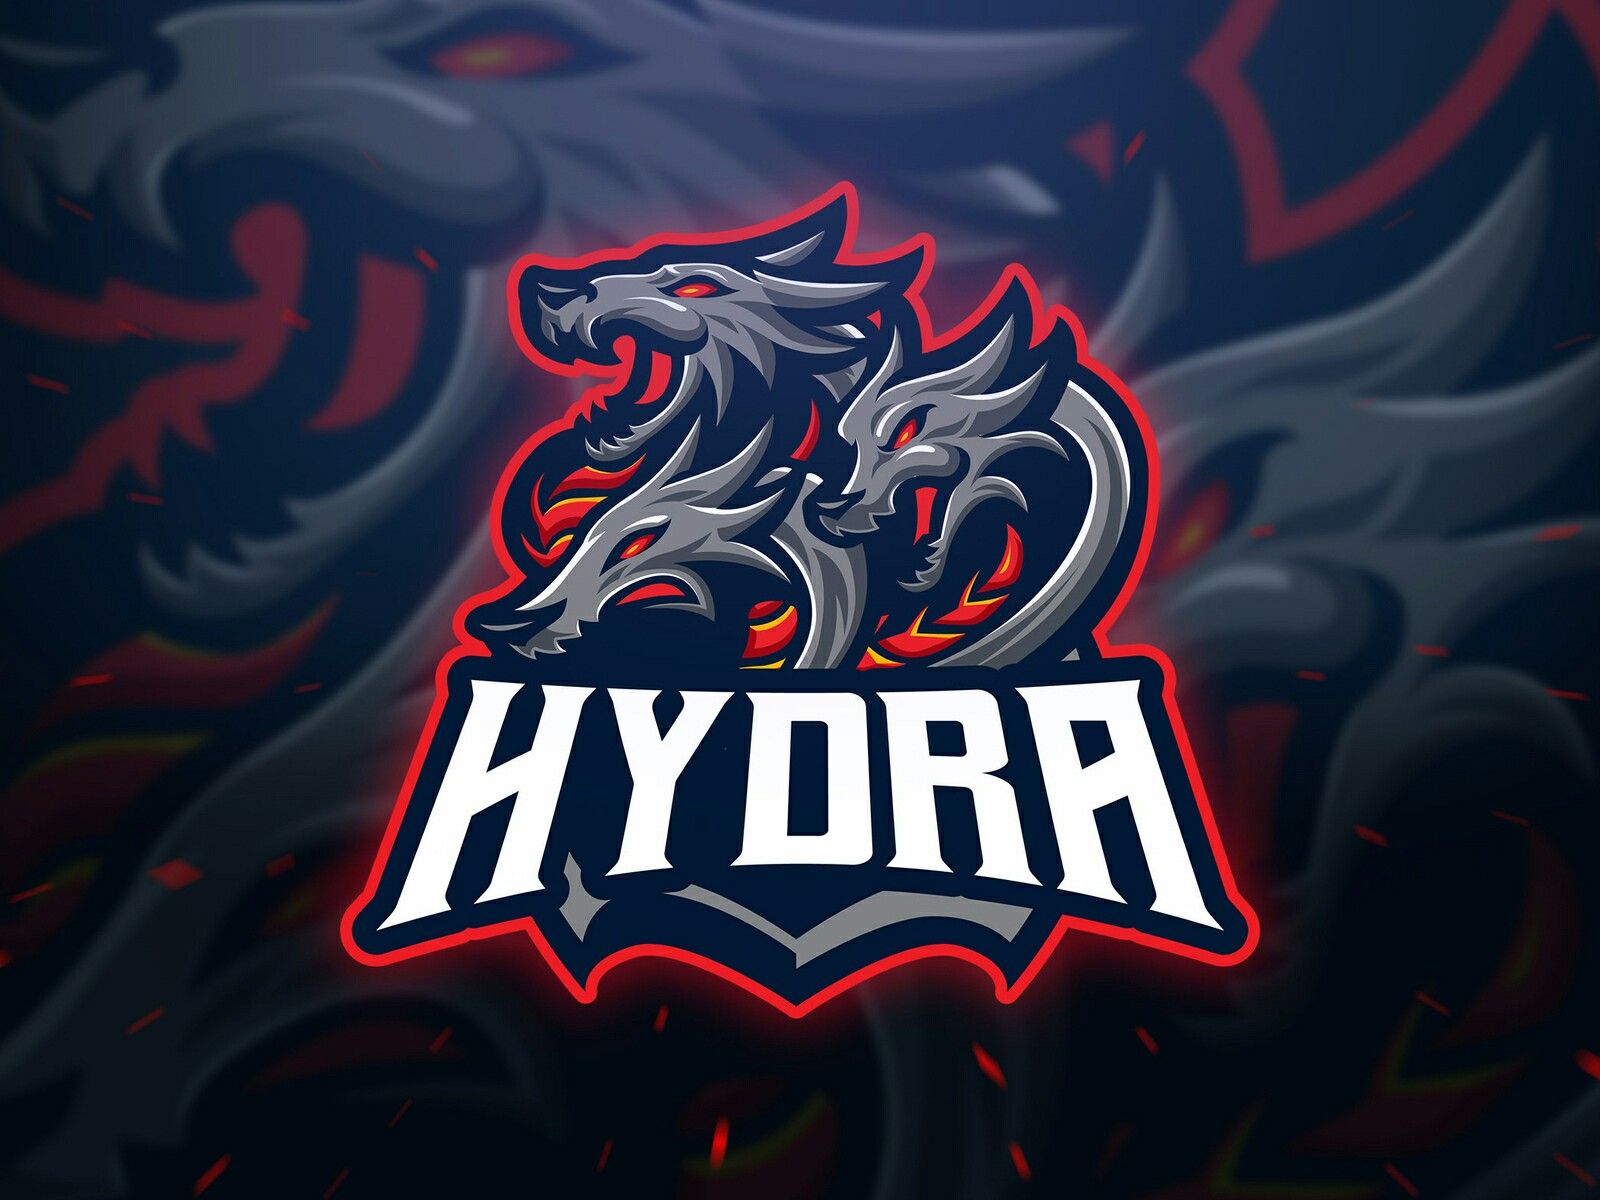 Hydra выступит с двумя новыми игроками в составе